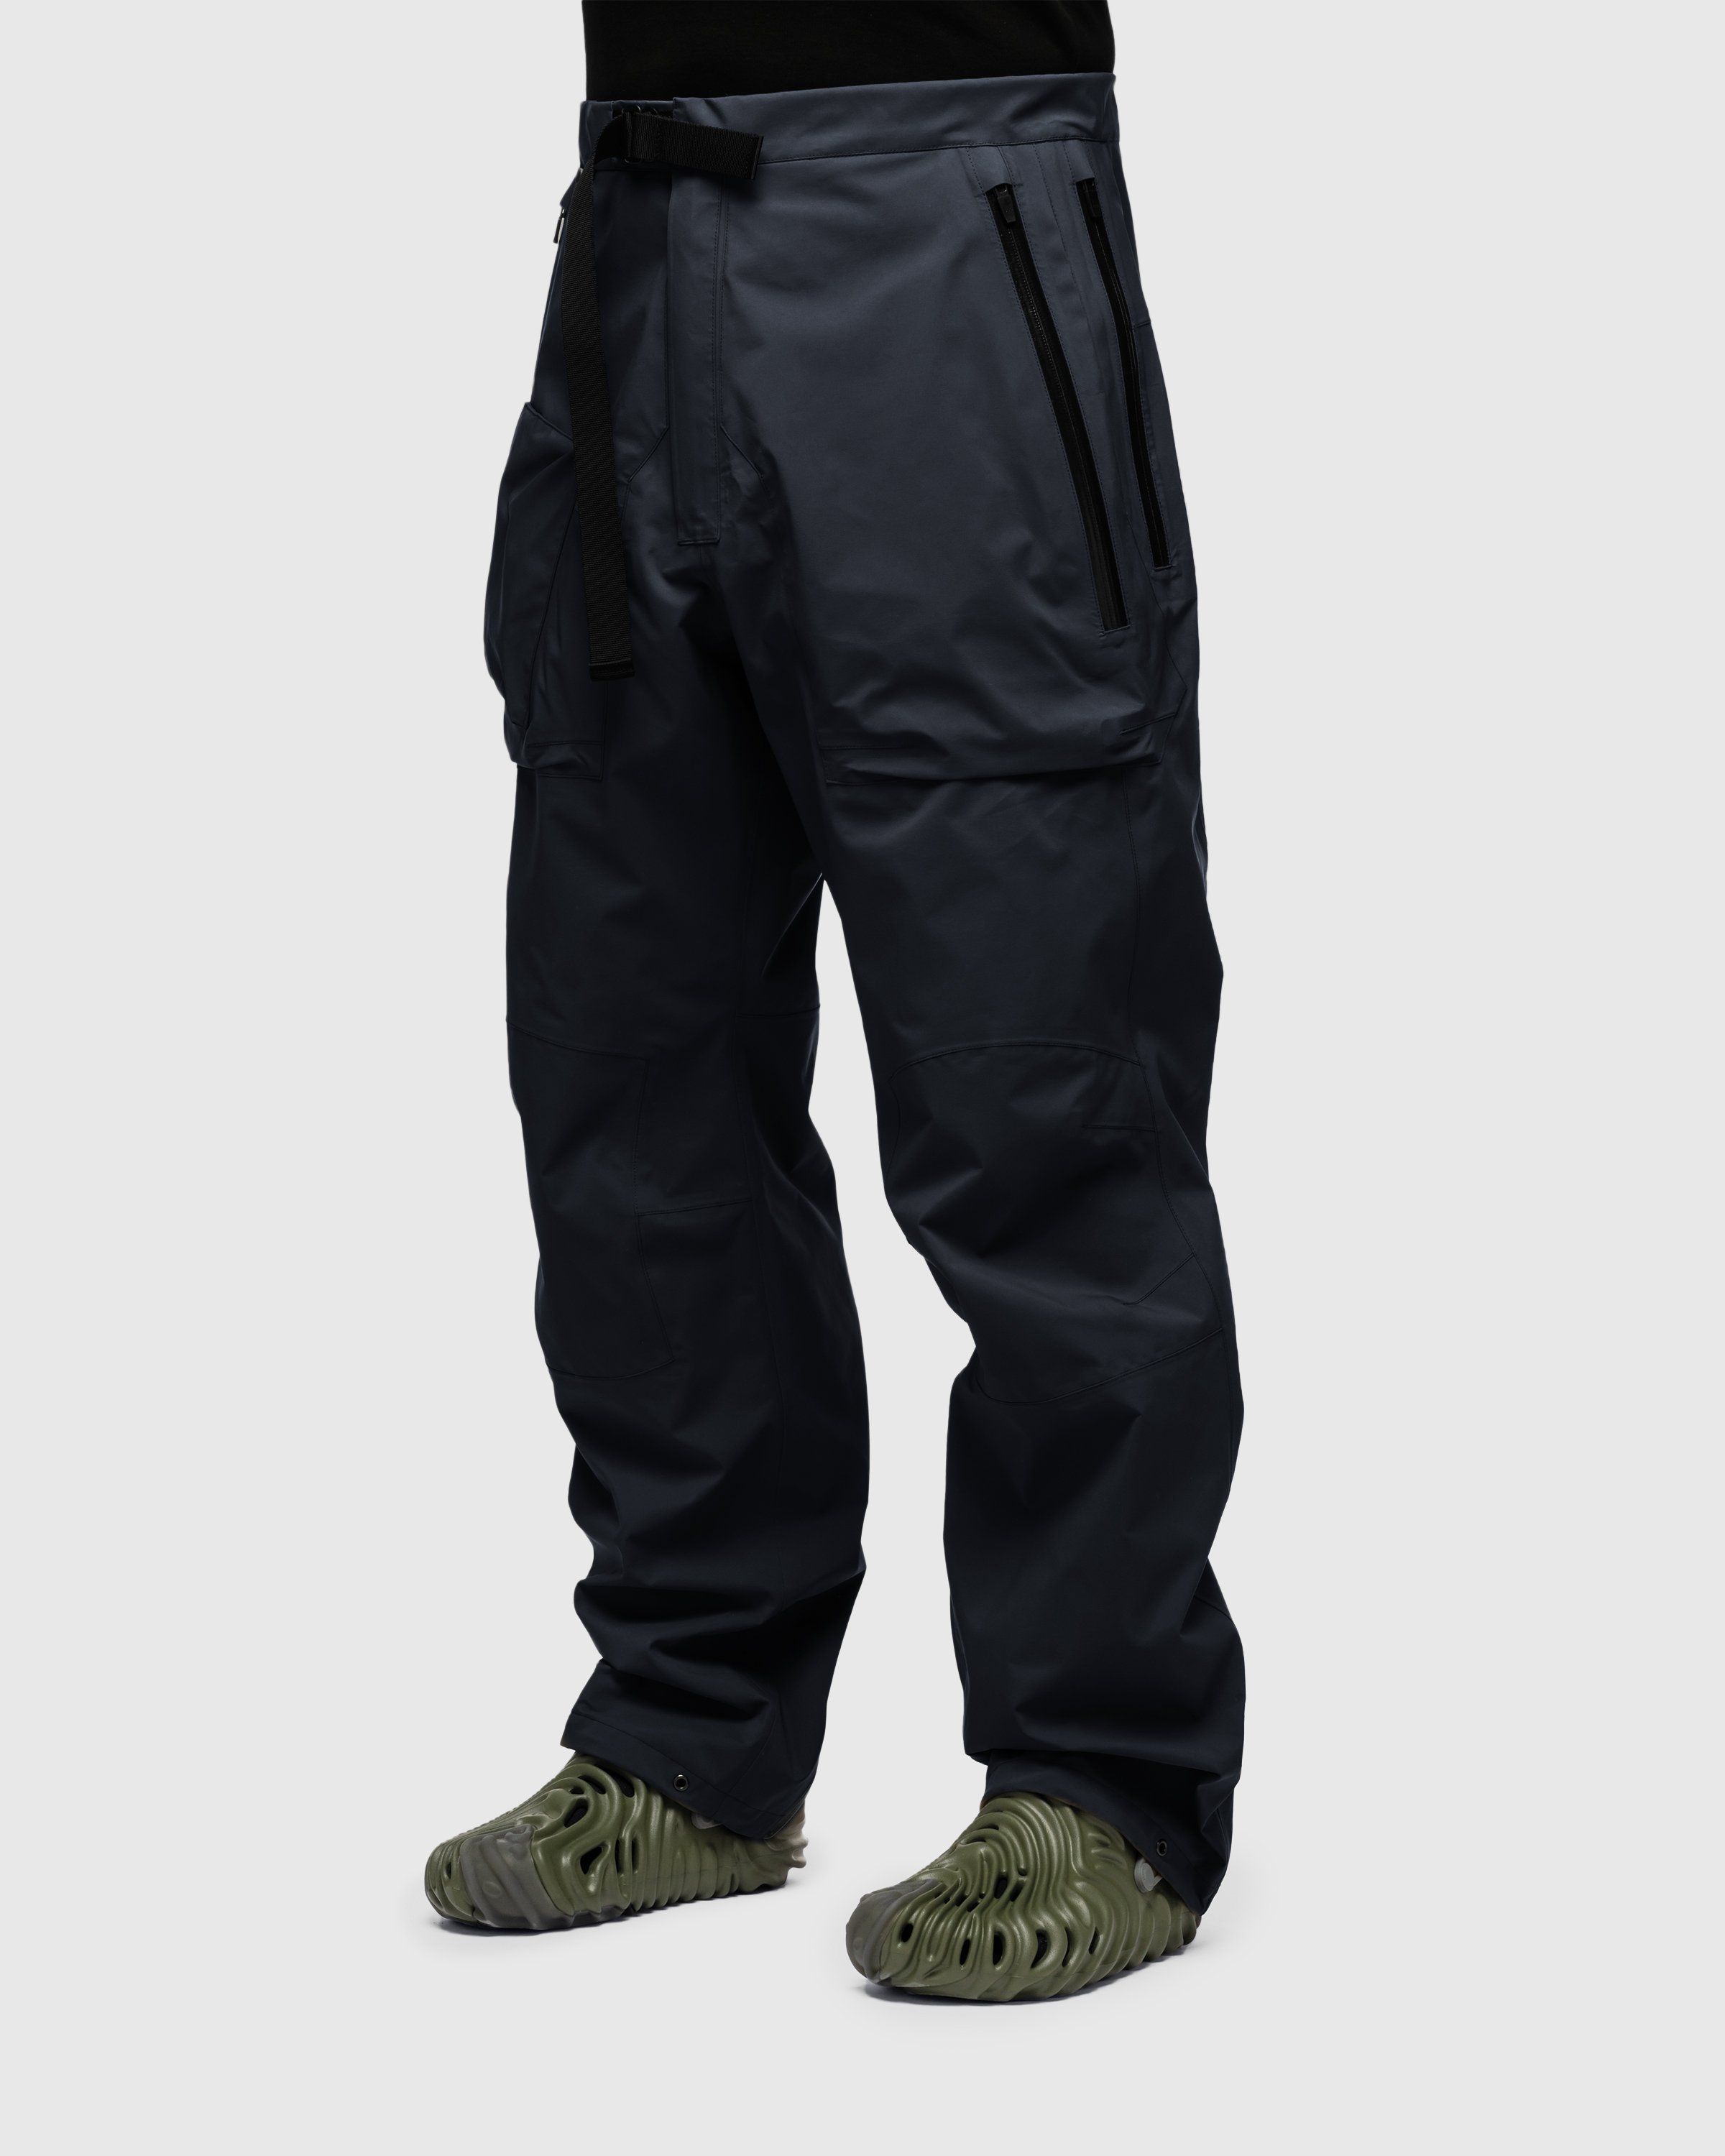 ACRONYM - P44-DS Cargo Pant Black - Clothing - Black - Image 5